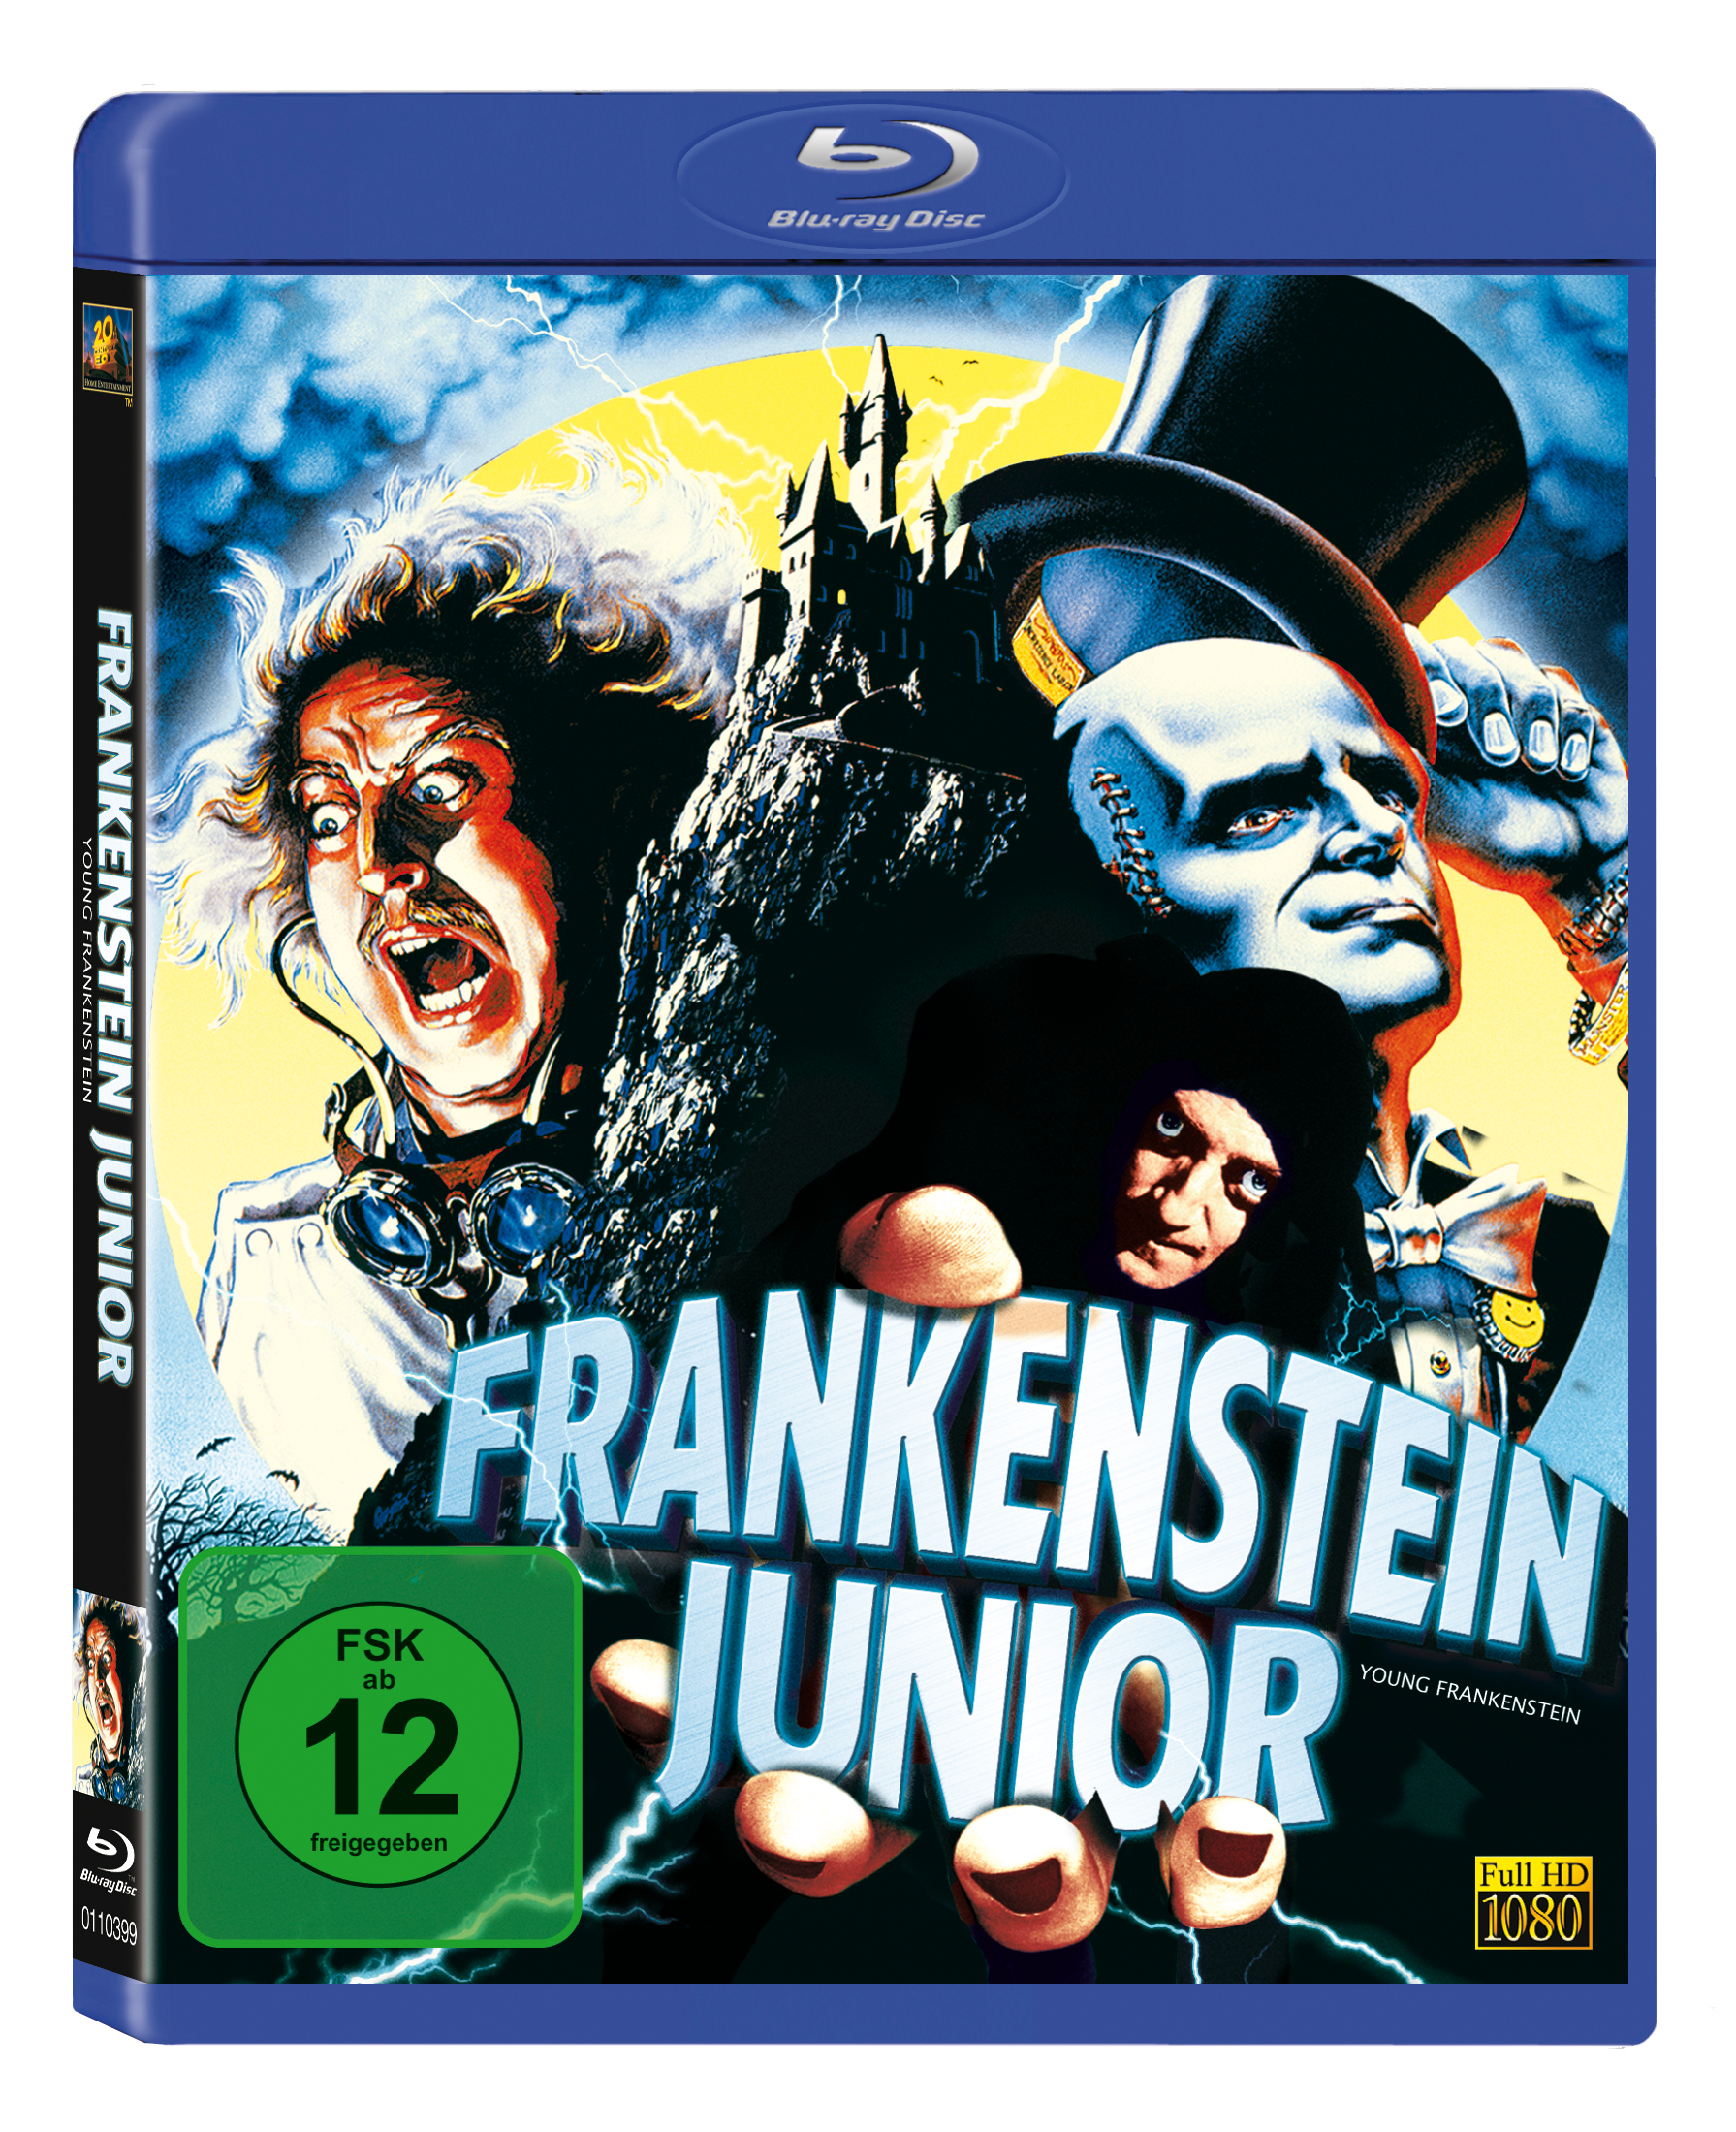 Junior Frankenstein Blu-ray